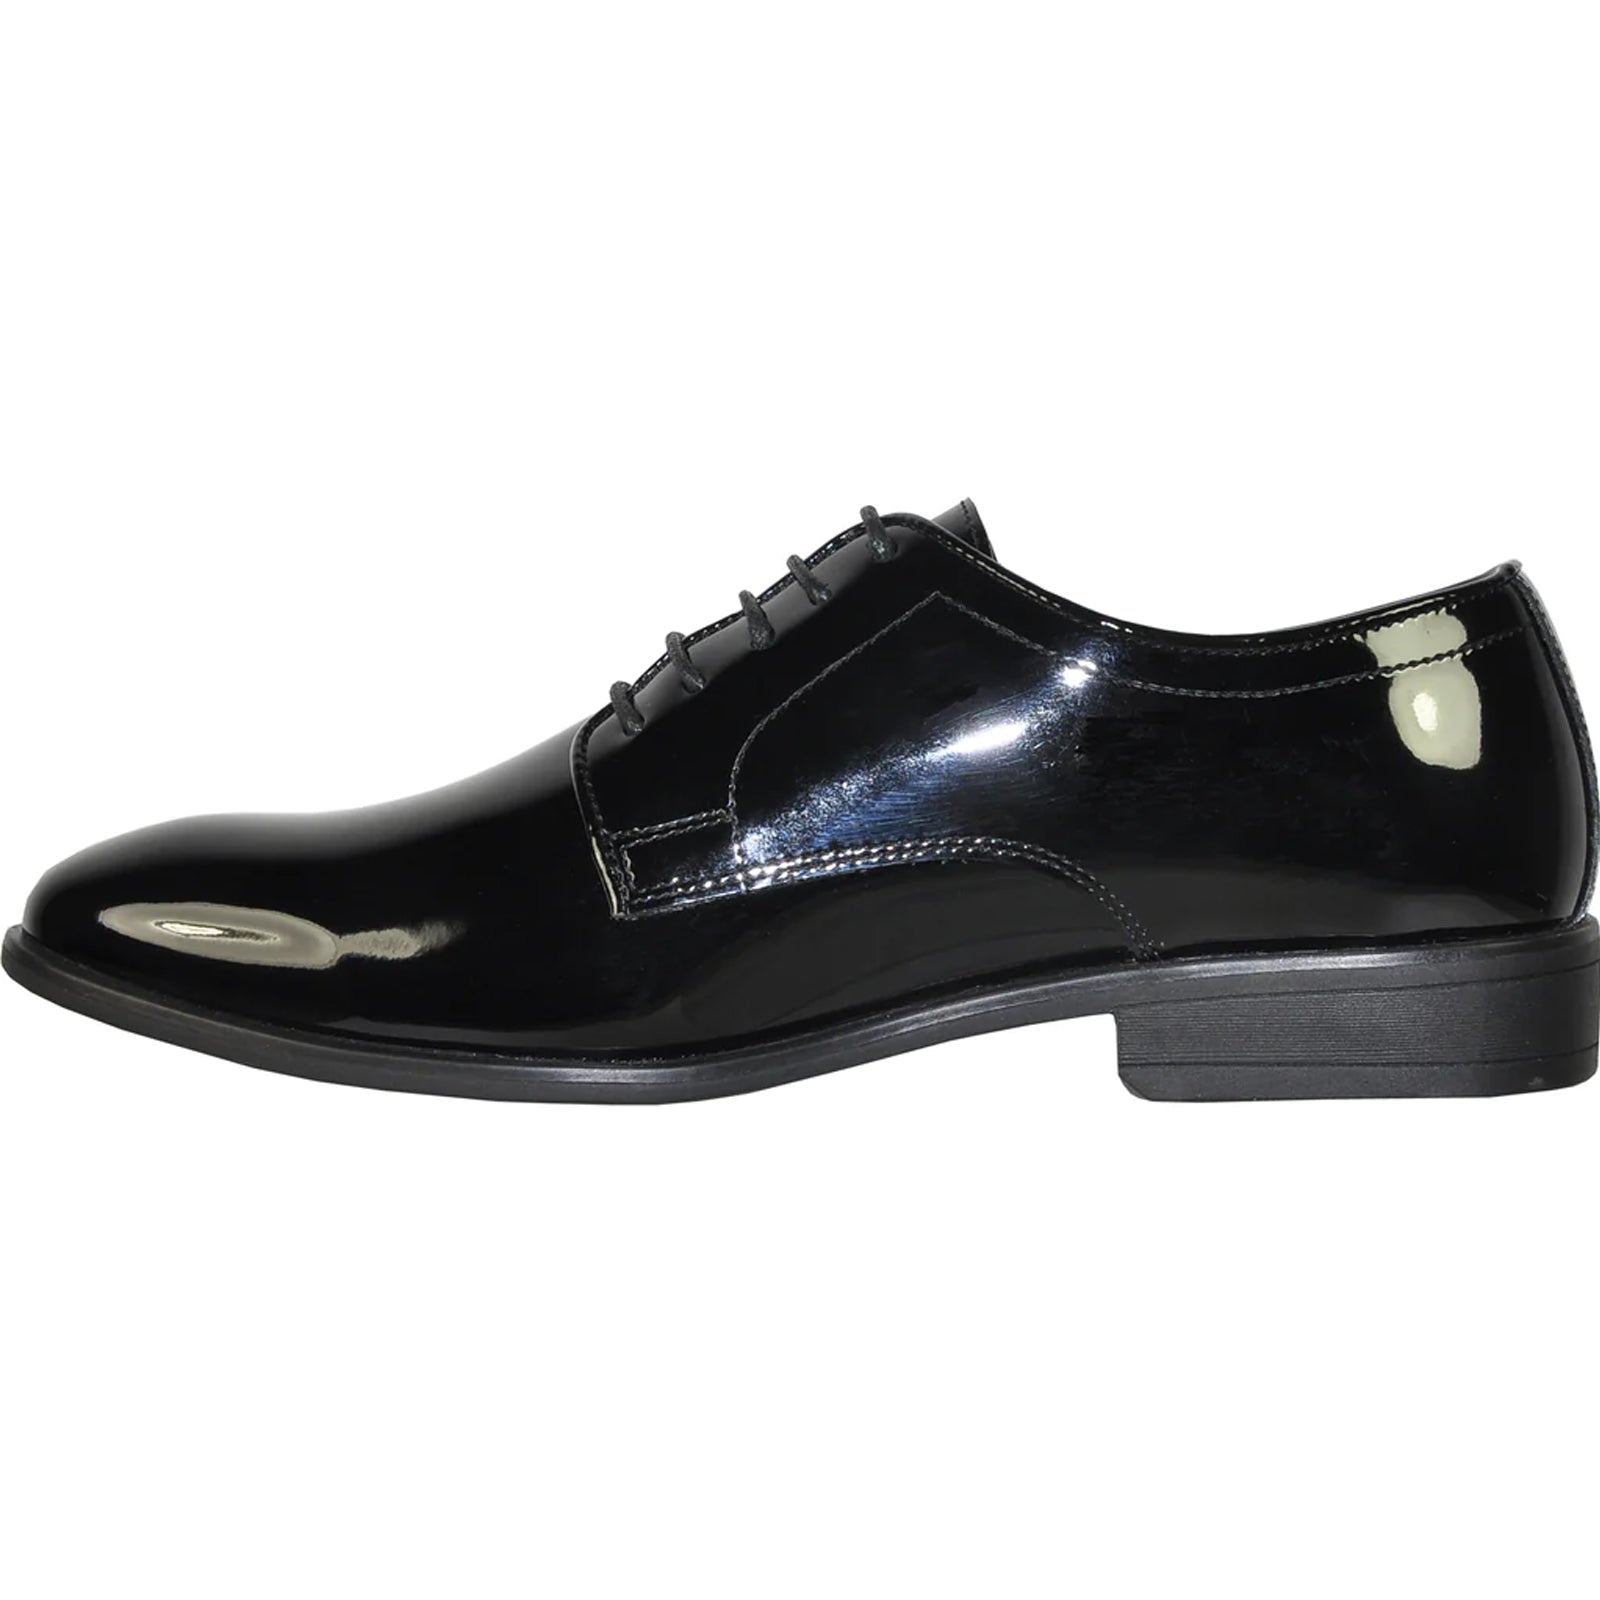 "Black Patent Oxford Dress Shoe - Men's Classic Plain Toe Tuxedo"